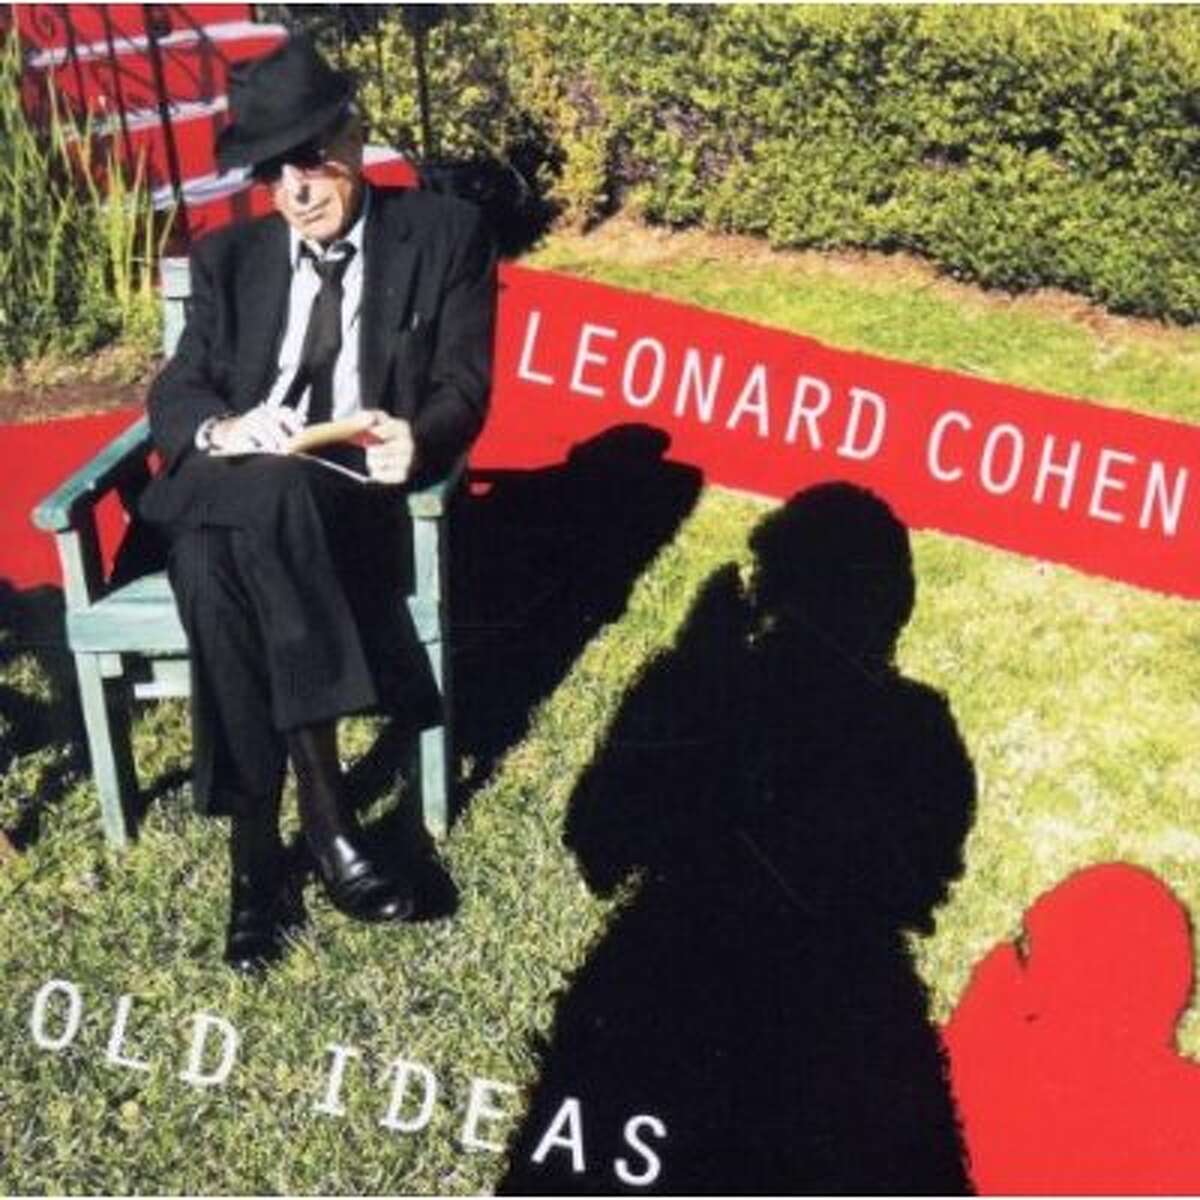 "Old Ideas" by Leonard Cohen